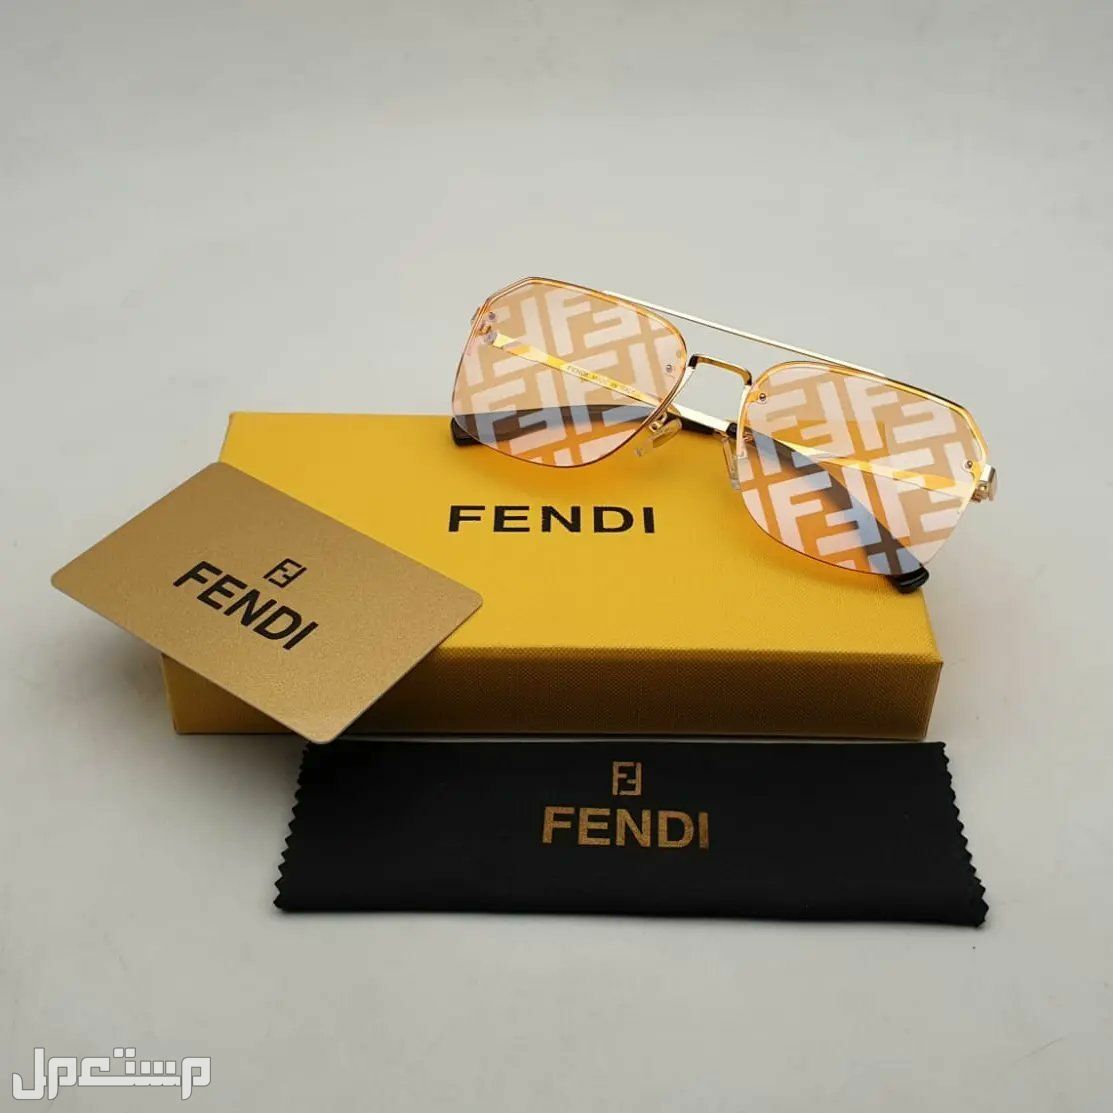 نظارات فندي Fendi النسائية تعرف على مواصفاتها وأسعارها كاملة في قطر فندي مميزة